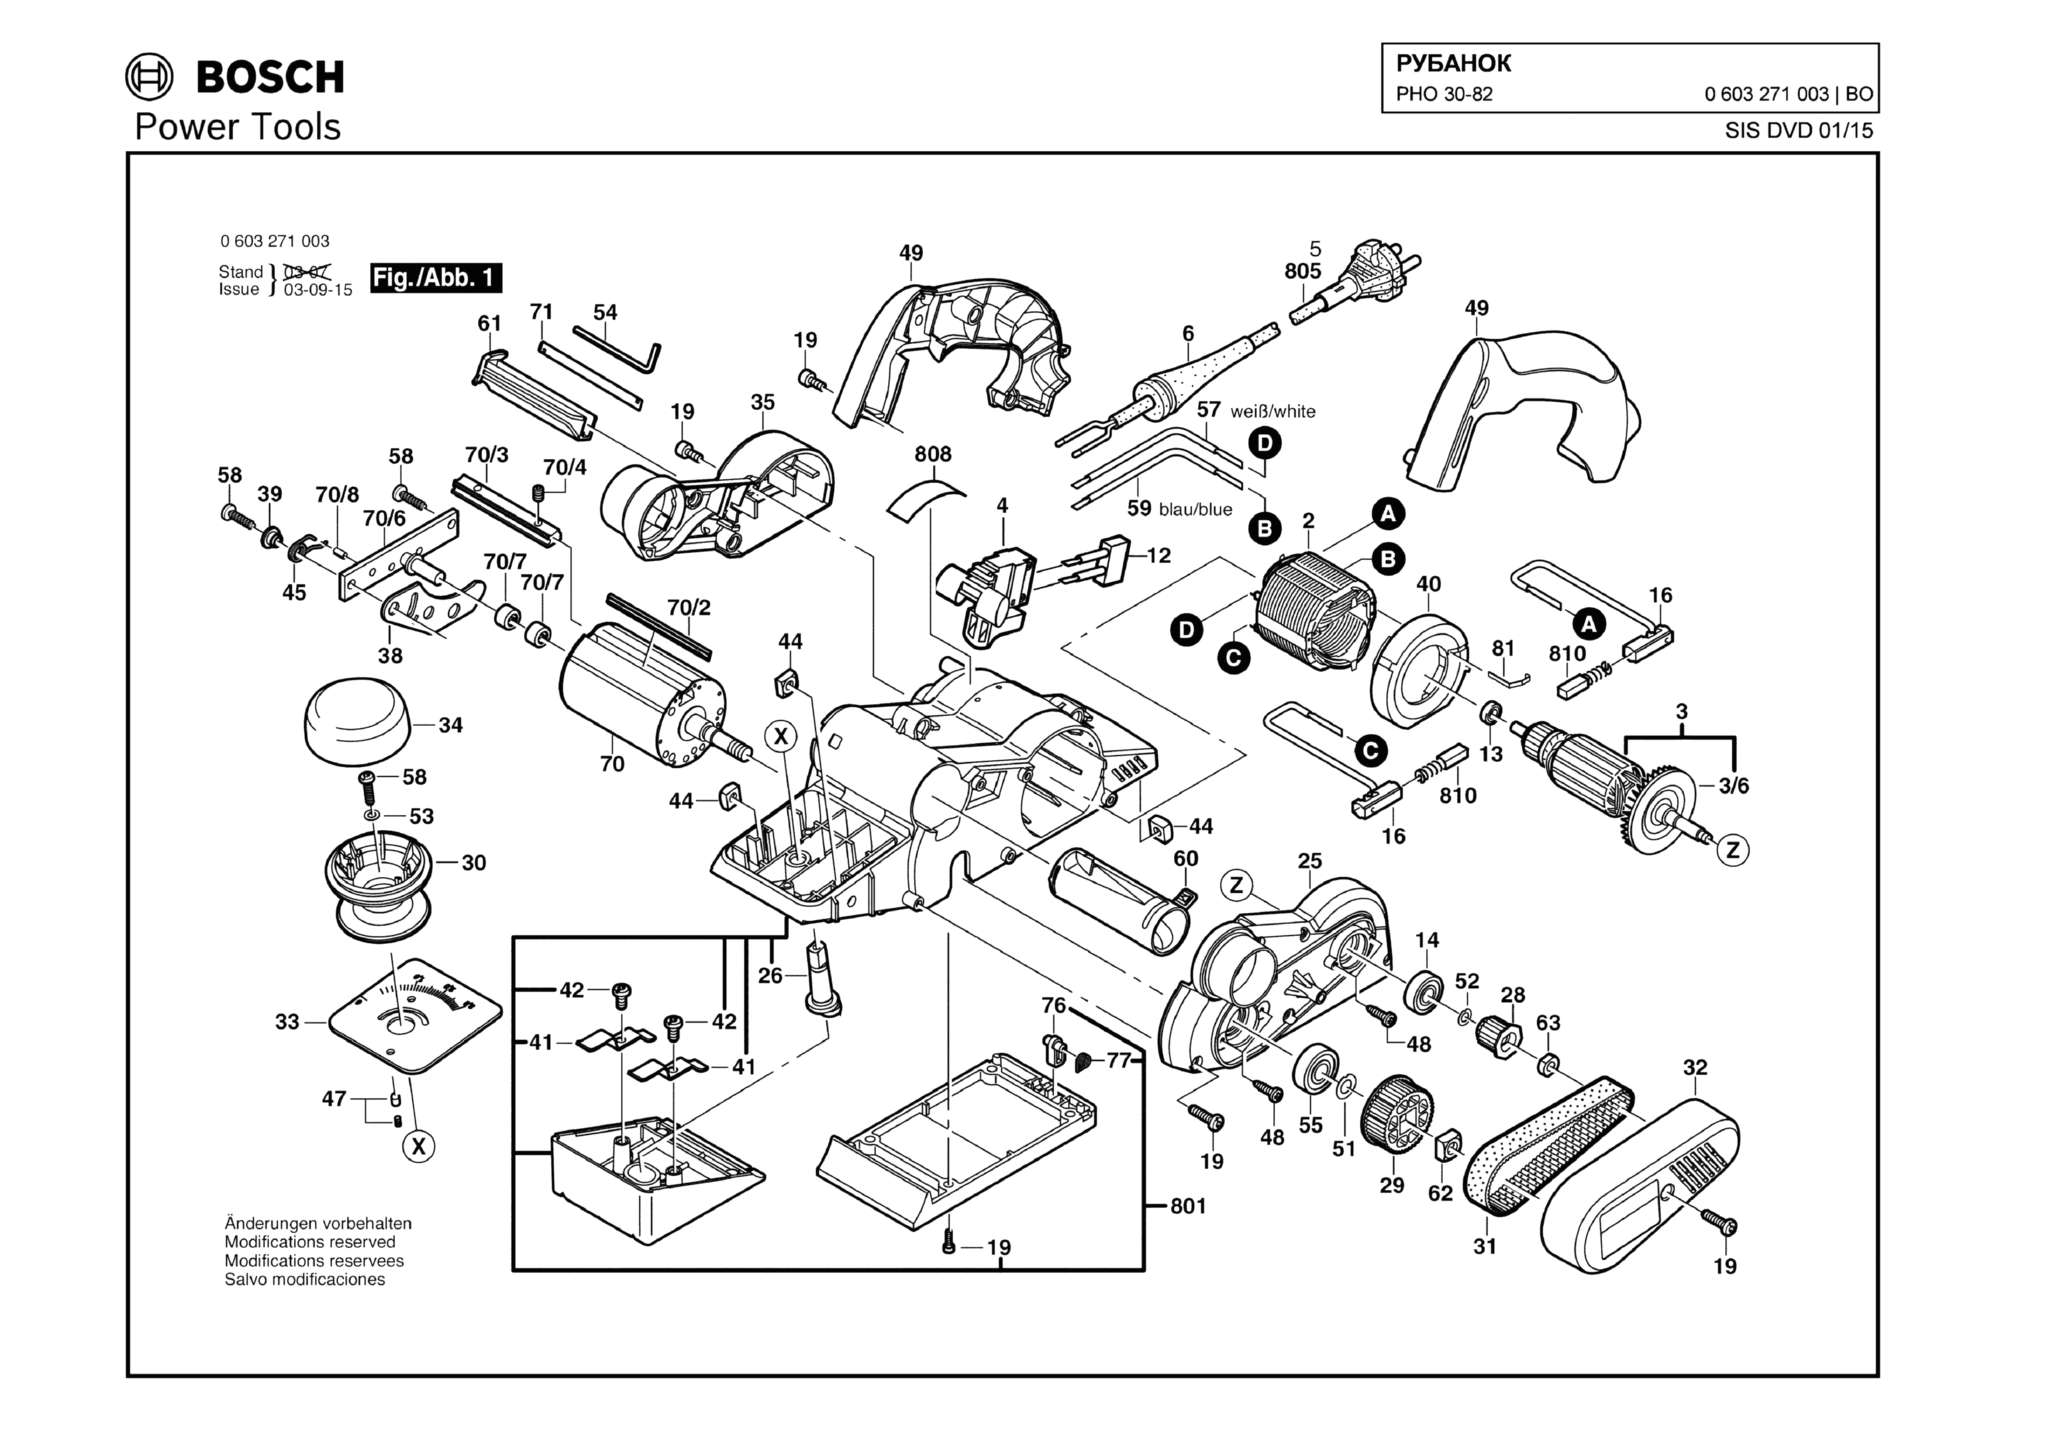 Запчасти, схема и деталировка Bosch PHO 30-82 (ТИП 0603271003)